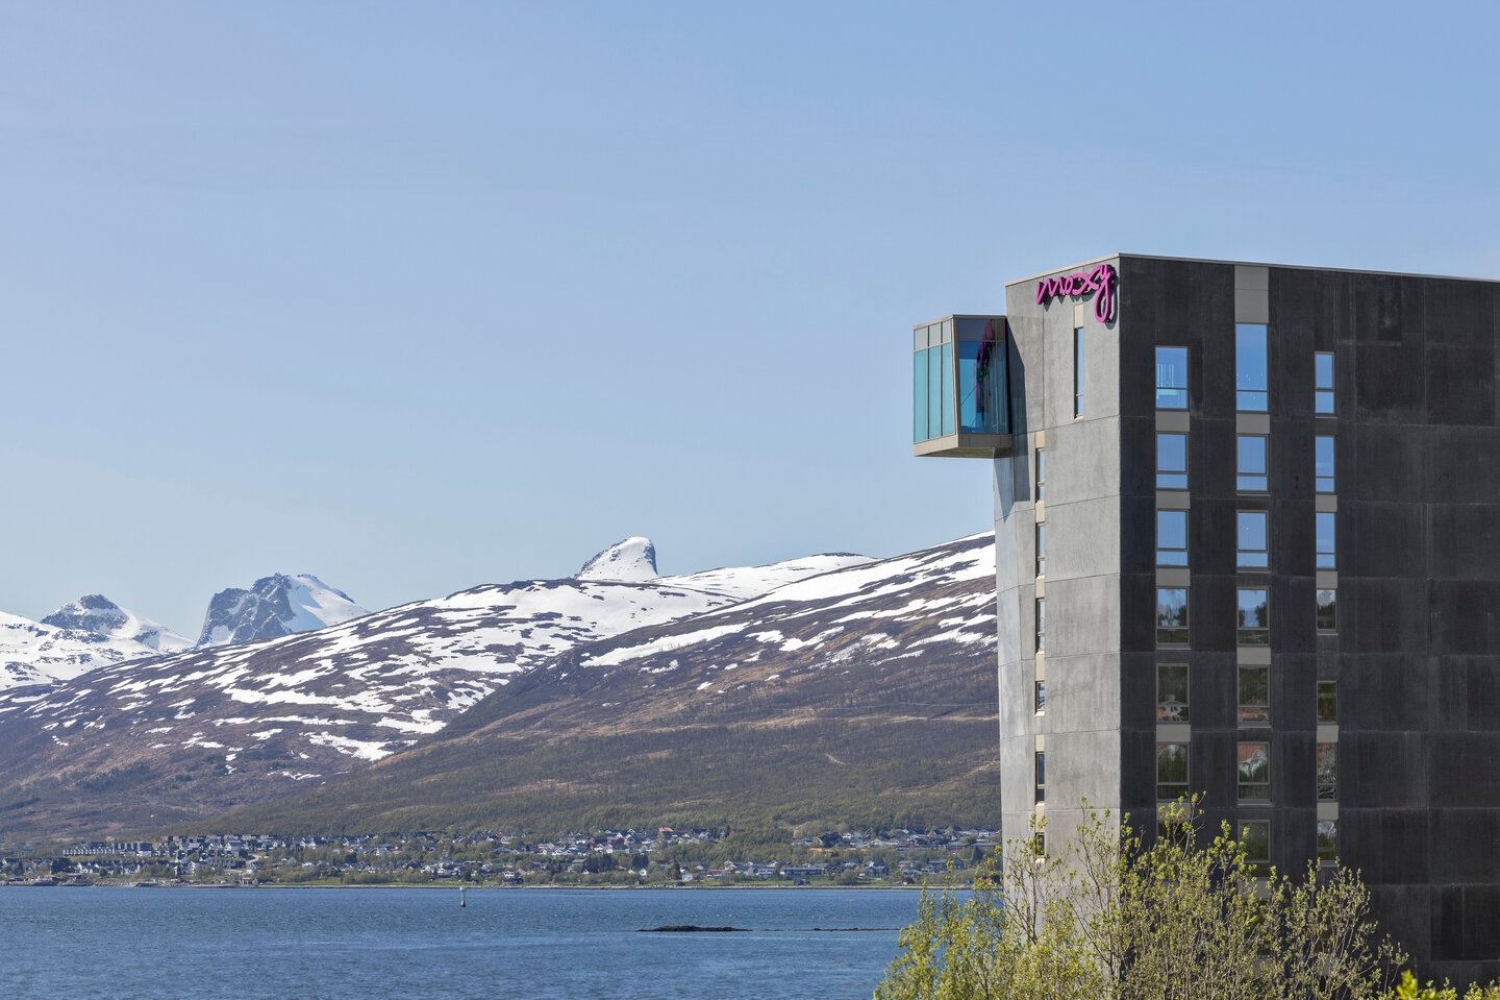 Moxy hotell Tromsø sett fra litt avstand, med Kvaløya i bakgrunnen.